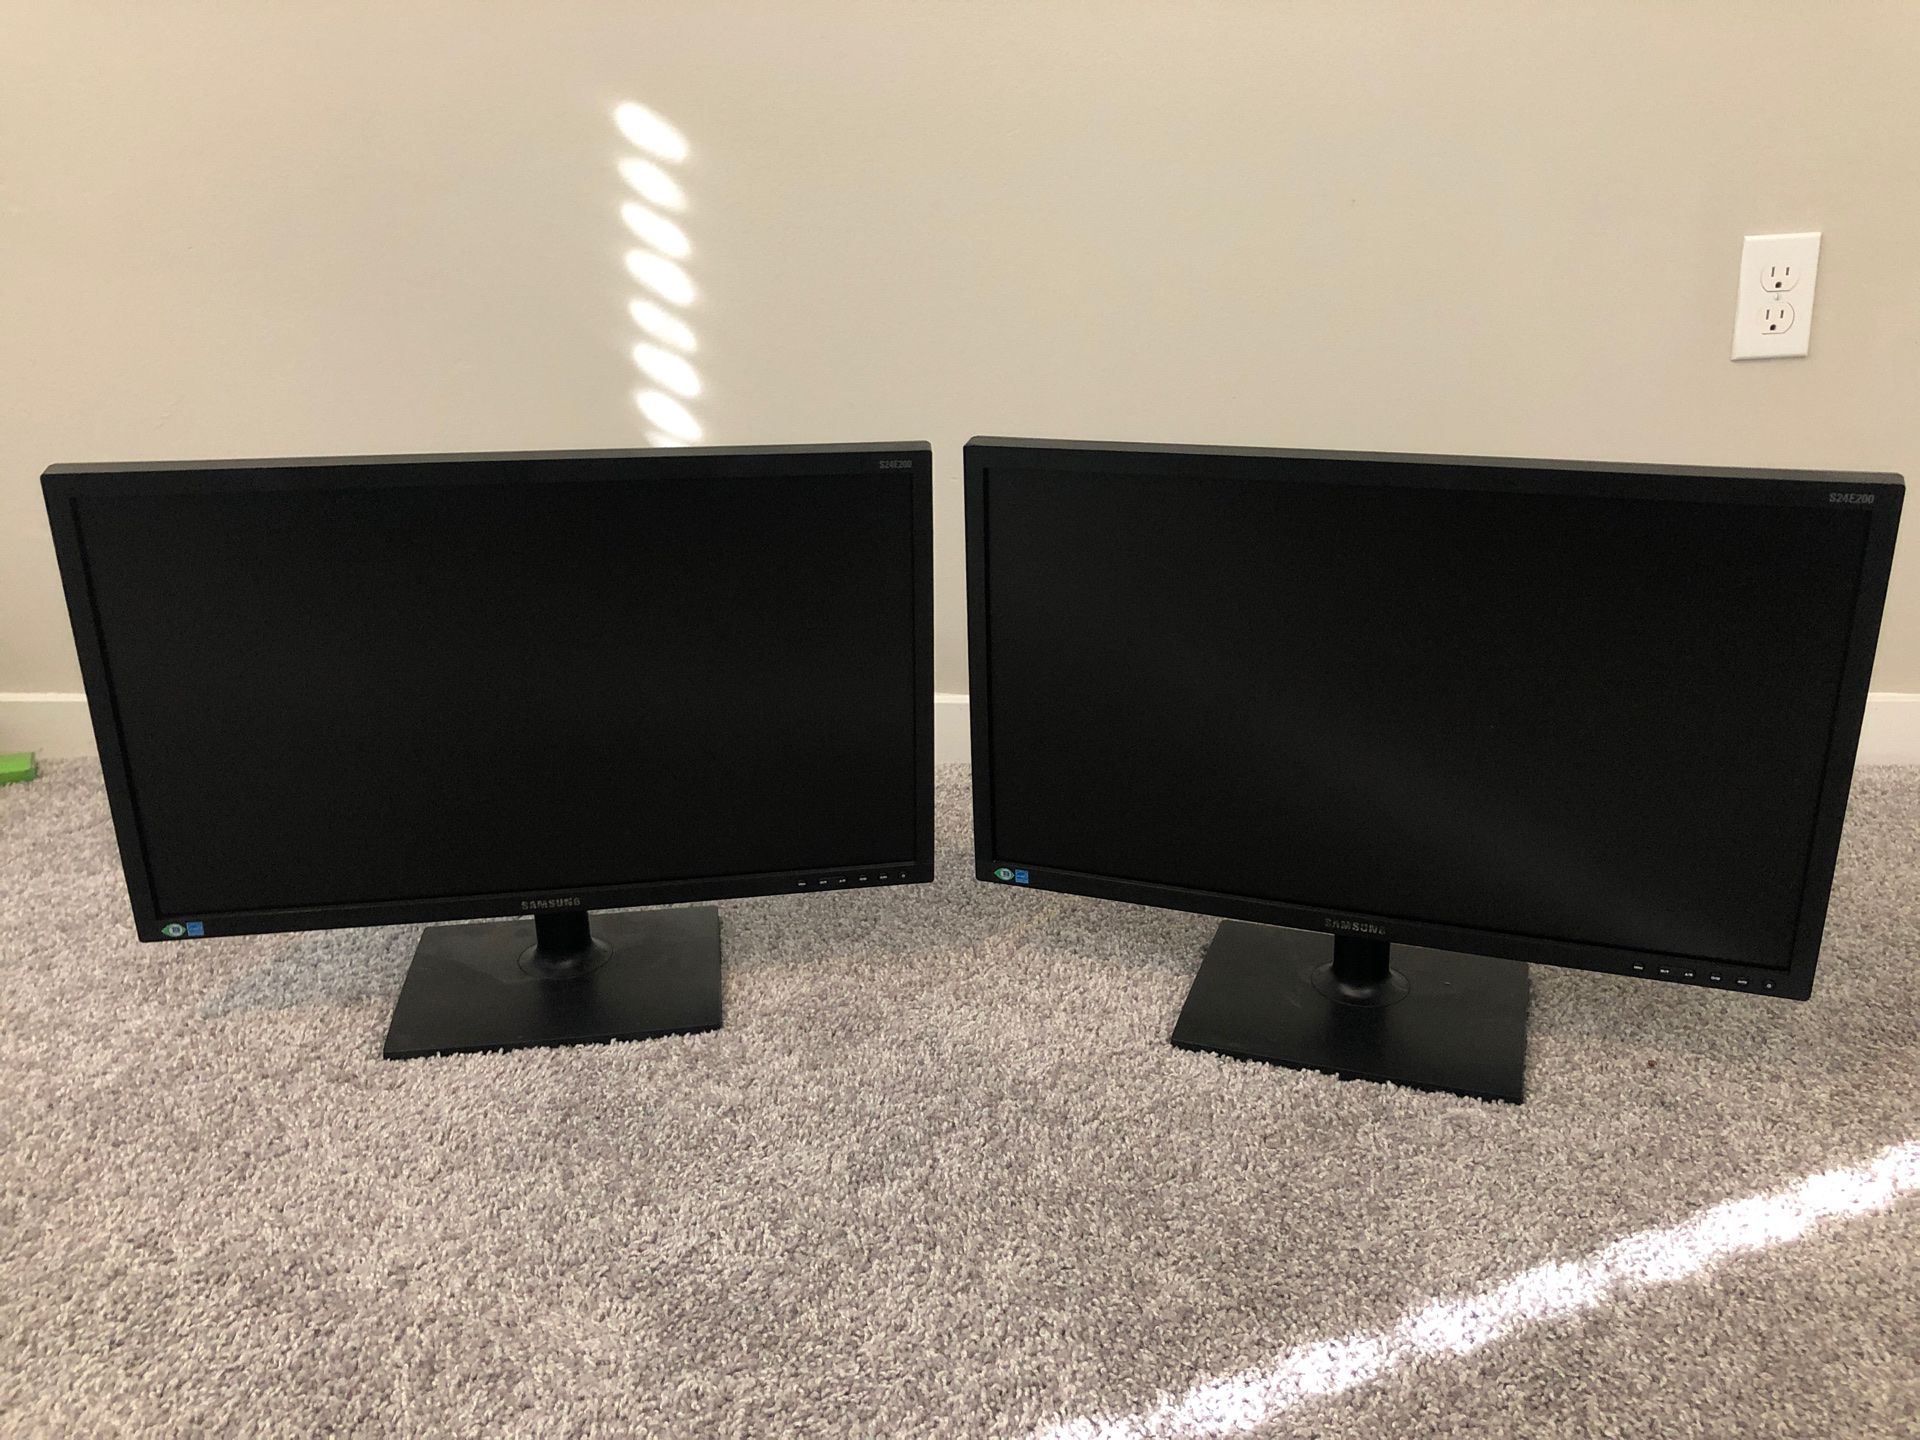 Two 24” Samsung monitors S24E200BL. Dual